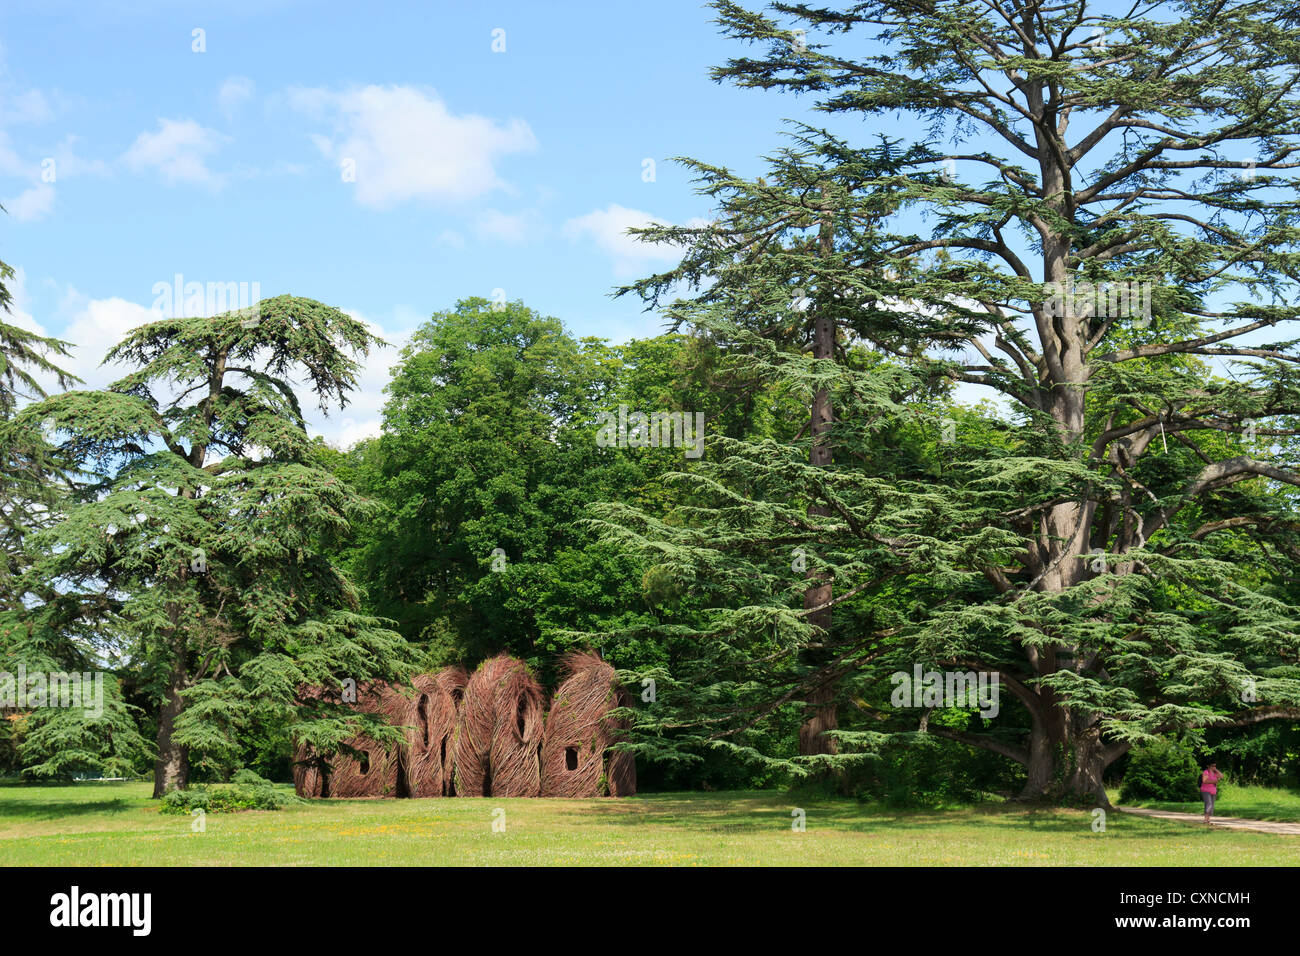 Festival Internacional de jardines de Chaumont-sur-loire 2012, trabajo por Patrick Dougherty en el castillo parc en 2012 Foto de stock